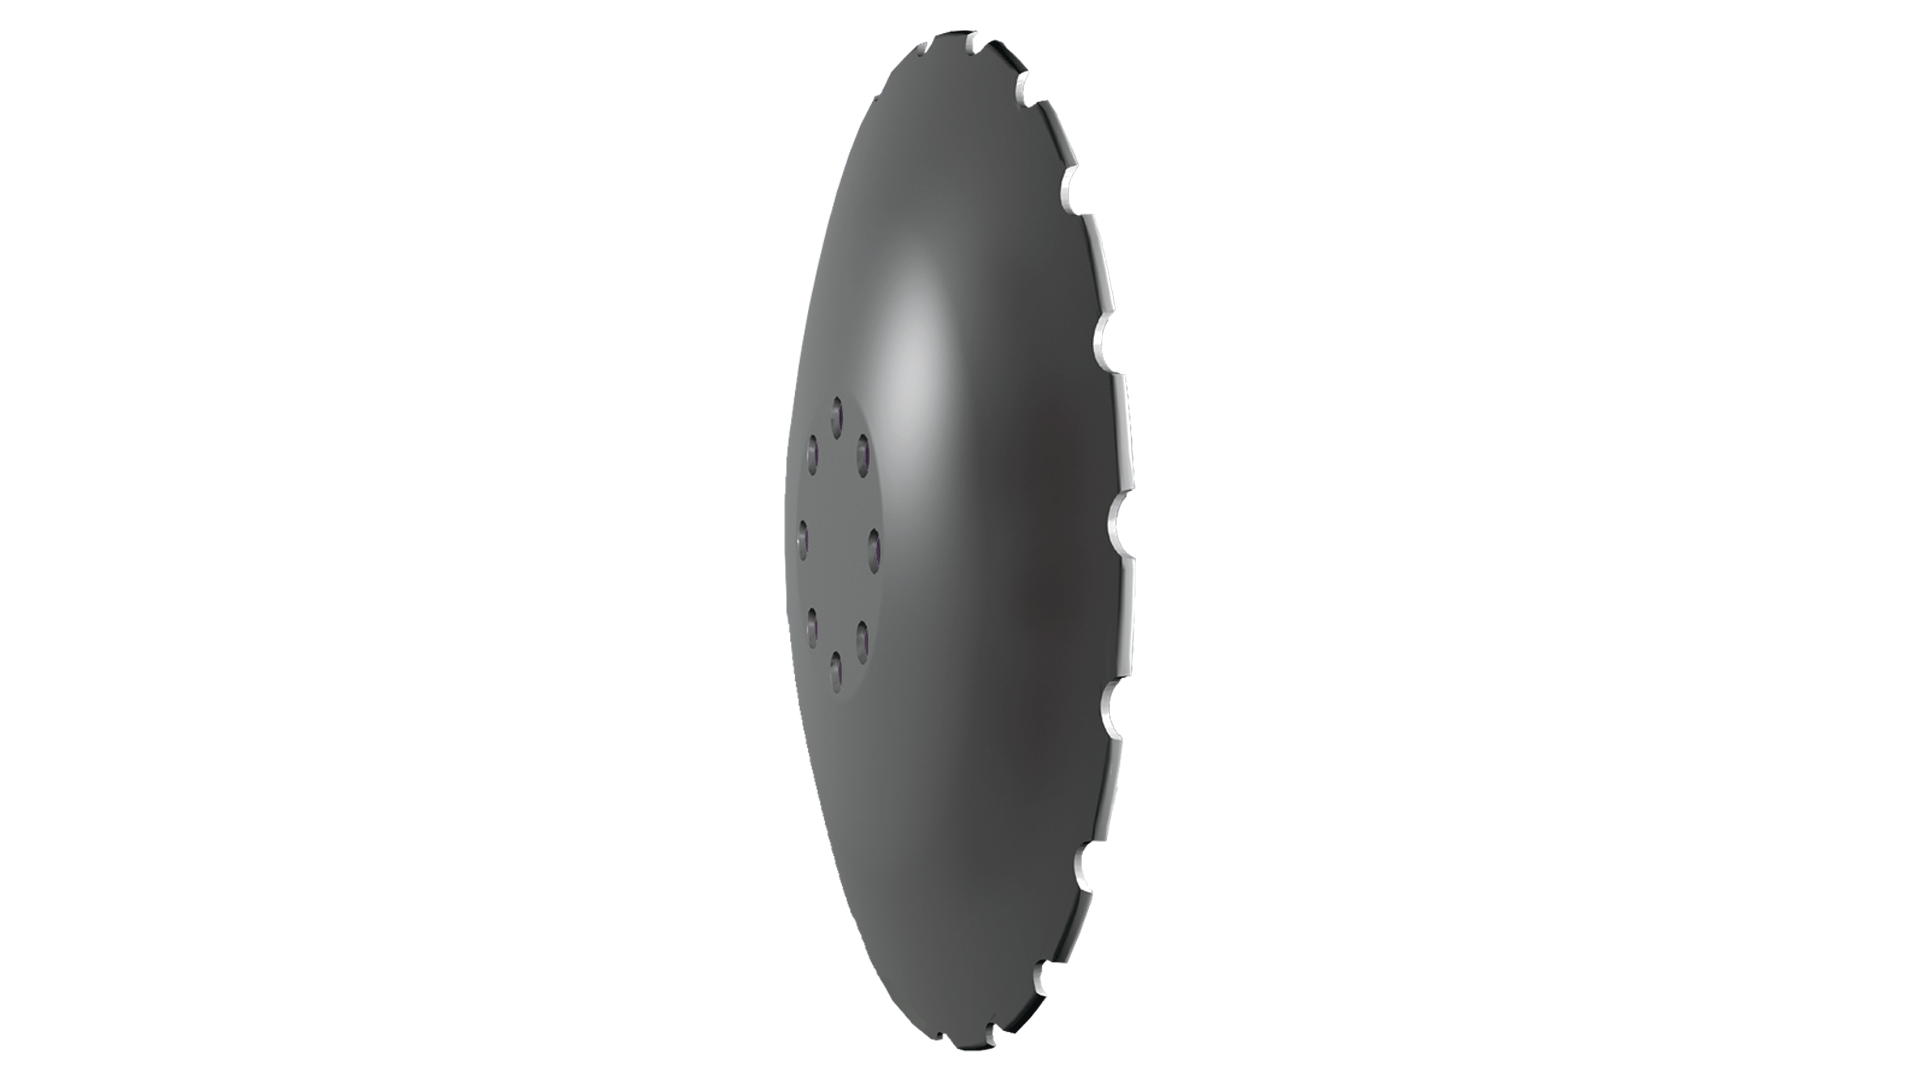 Le disque Sabre présente une courbure plus petite, ce qui donne une intersection optimale et efficace et comme les disques sont décalés sur la machine, on obtient un mélange optimal du sol et de la paille.